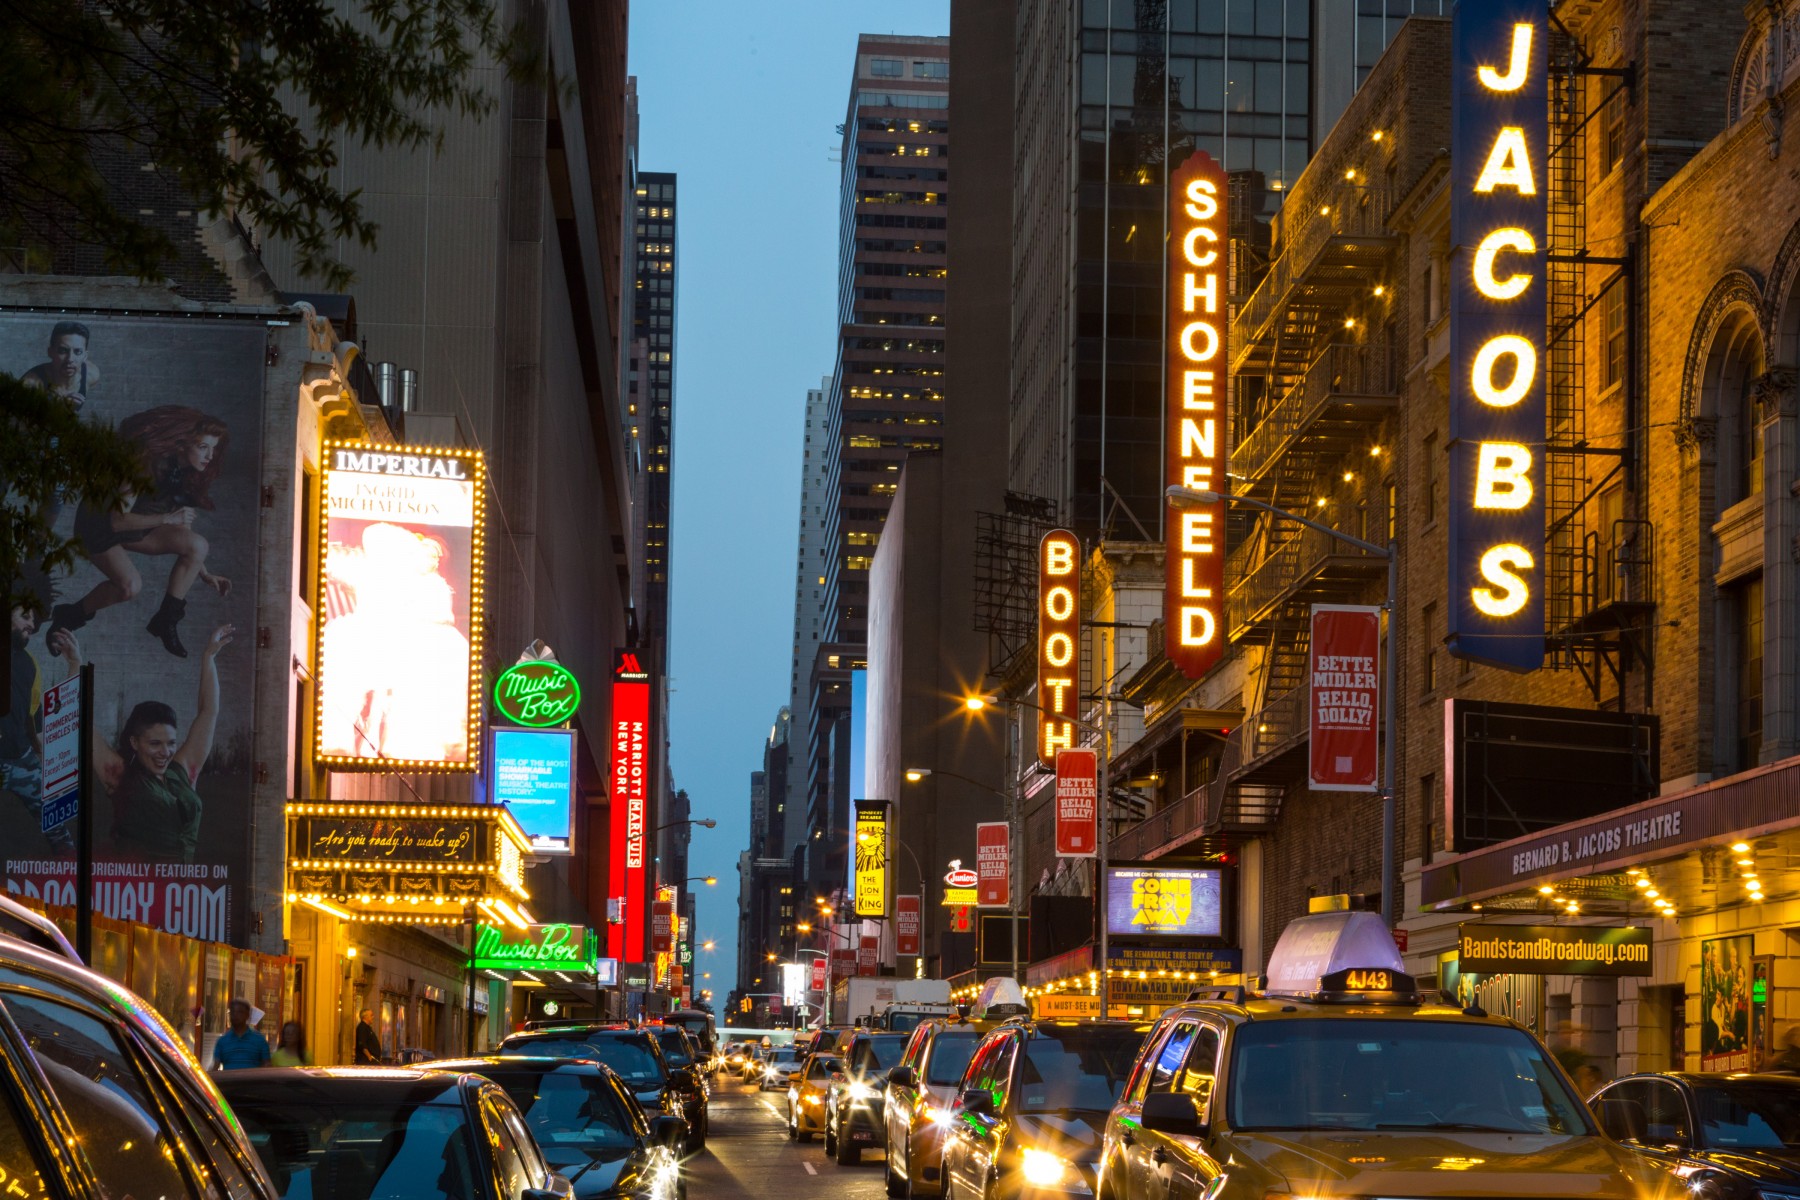 Photo of the hotel Sofitel New York: Broadway kateglicksber